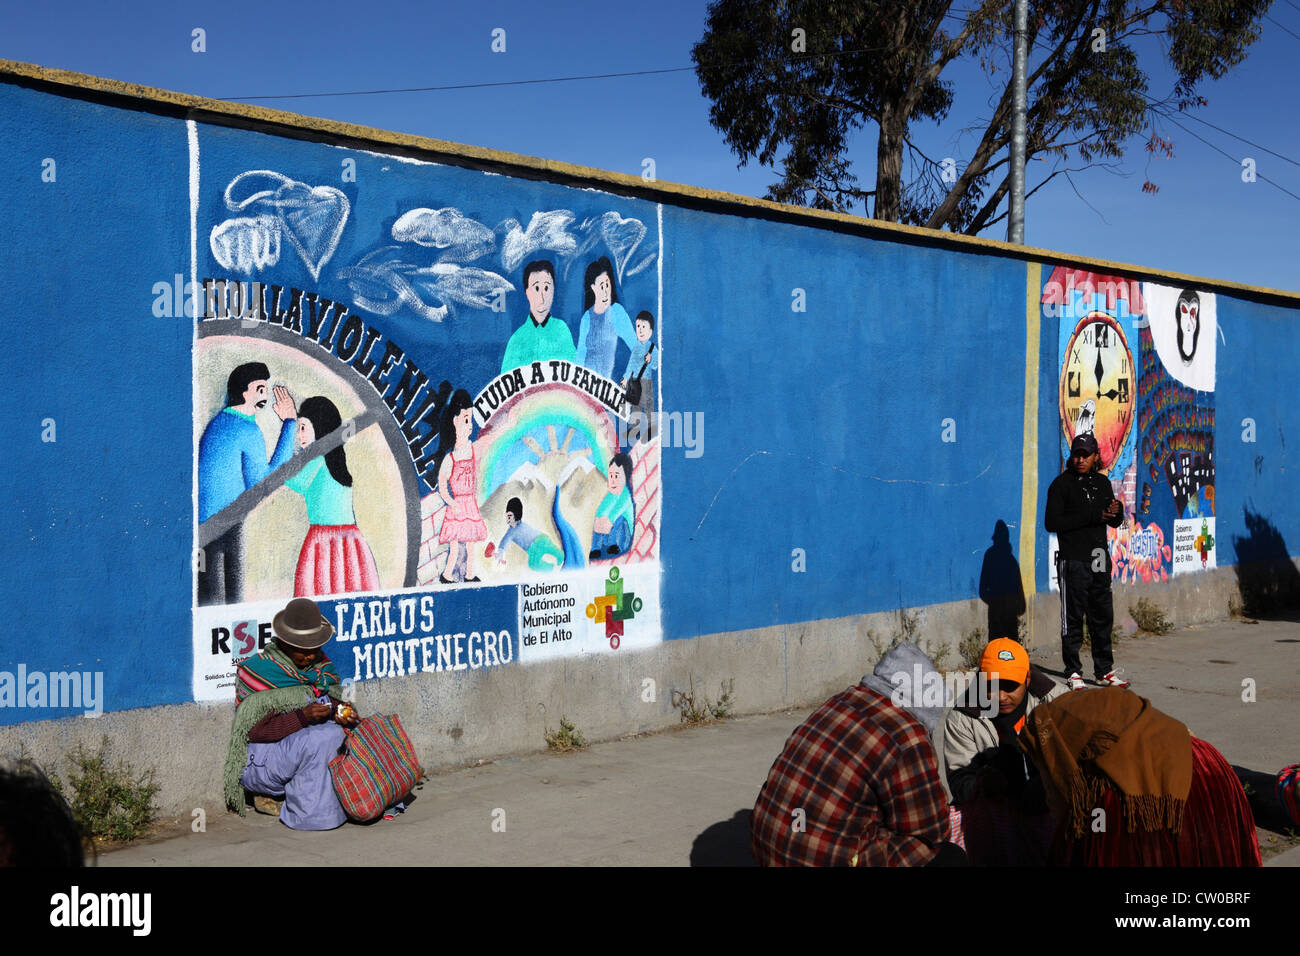 Mujer nativa sentada en el pavimento junto al mural que es parte de una campaña para reducir el abuso doméstico y la violencia contra las mujeres, El Alto, Bolivia Foto de stock